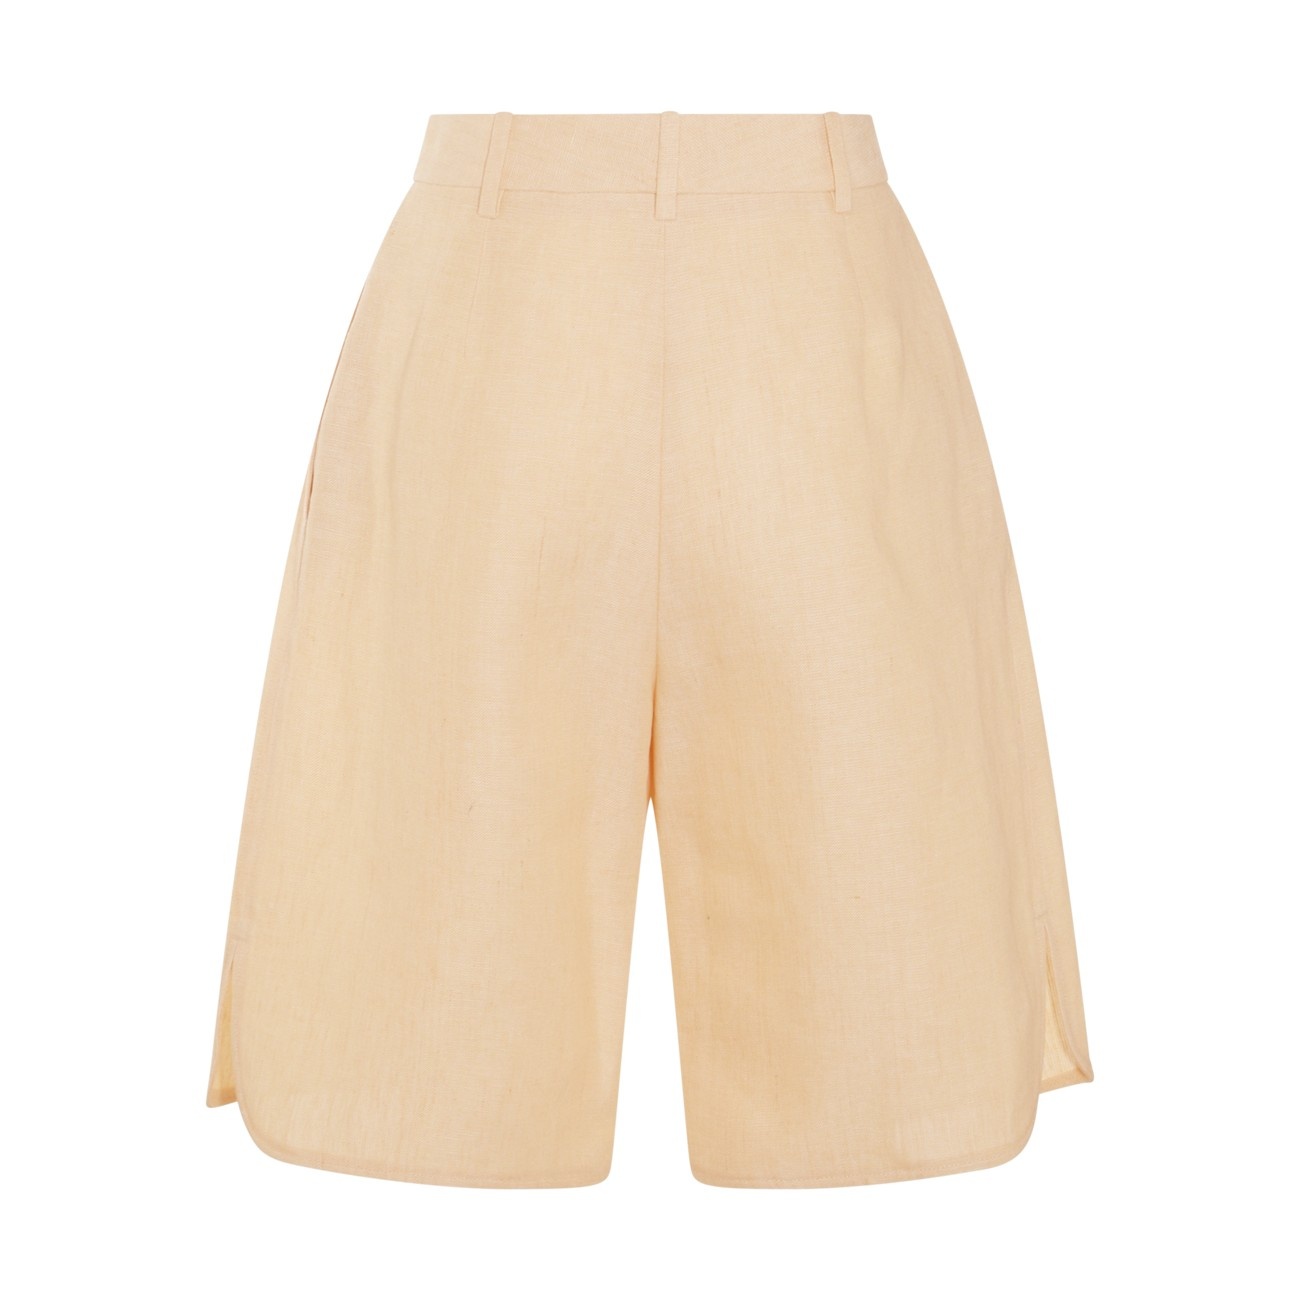 beige linen shorts - 2